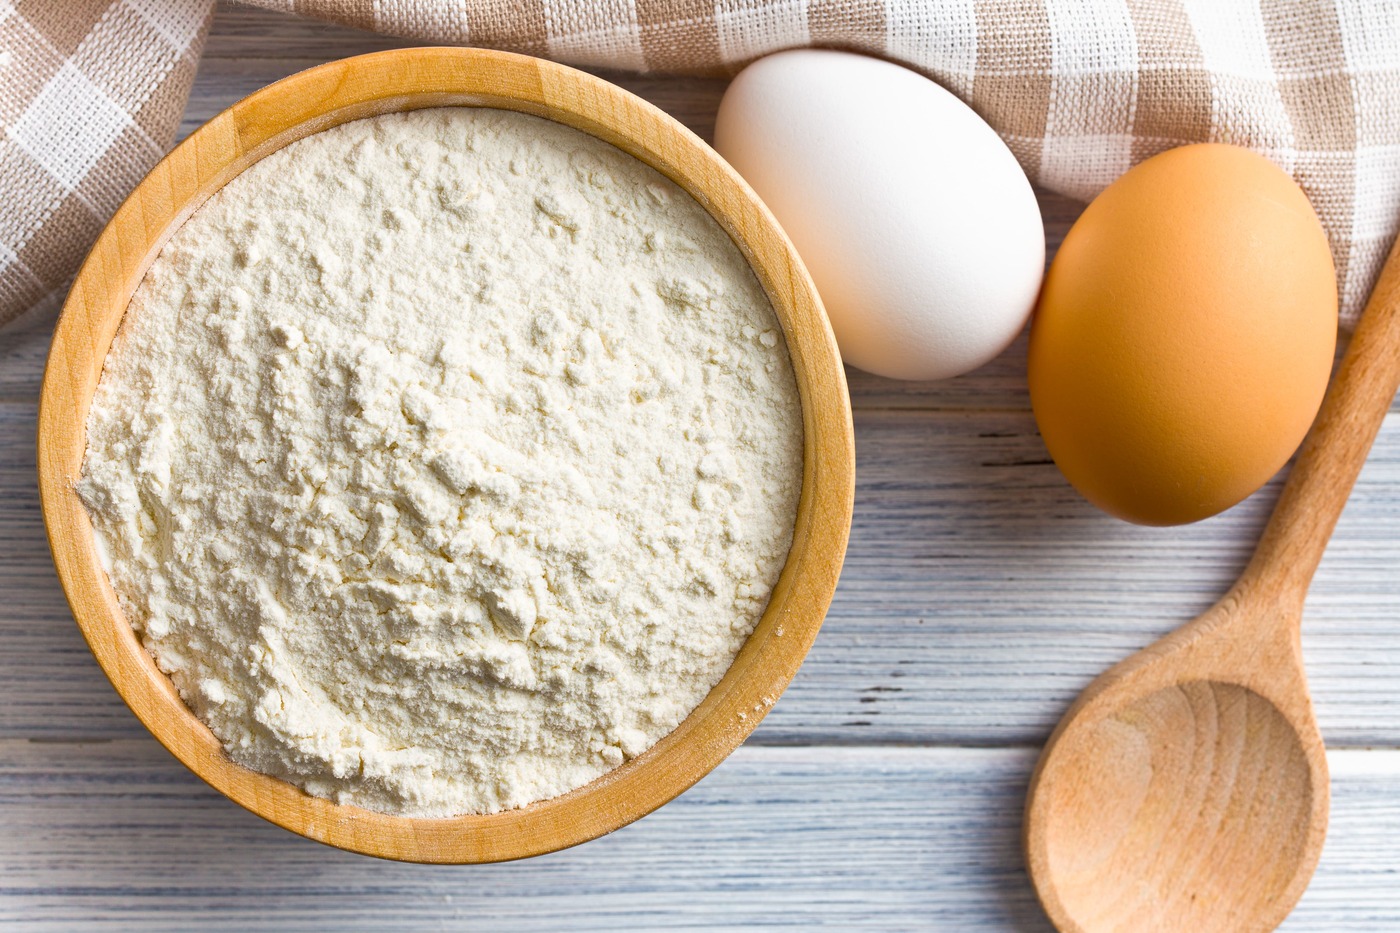 flour-and-eggs-on-kitchen-table-2021-08-26-16-24-34-utc-1.jpg